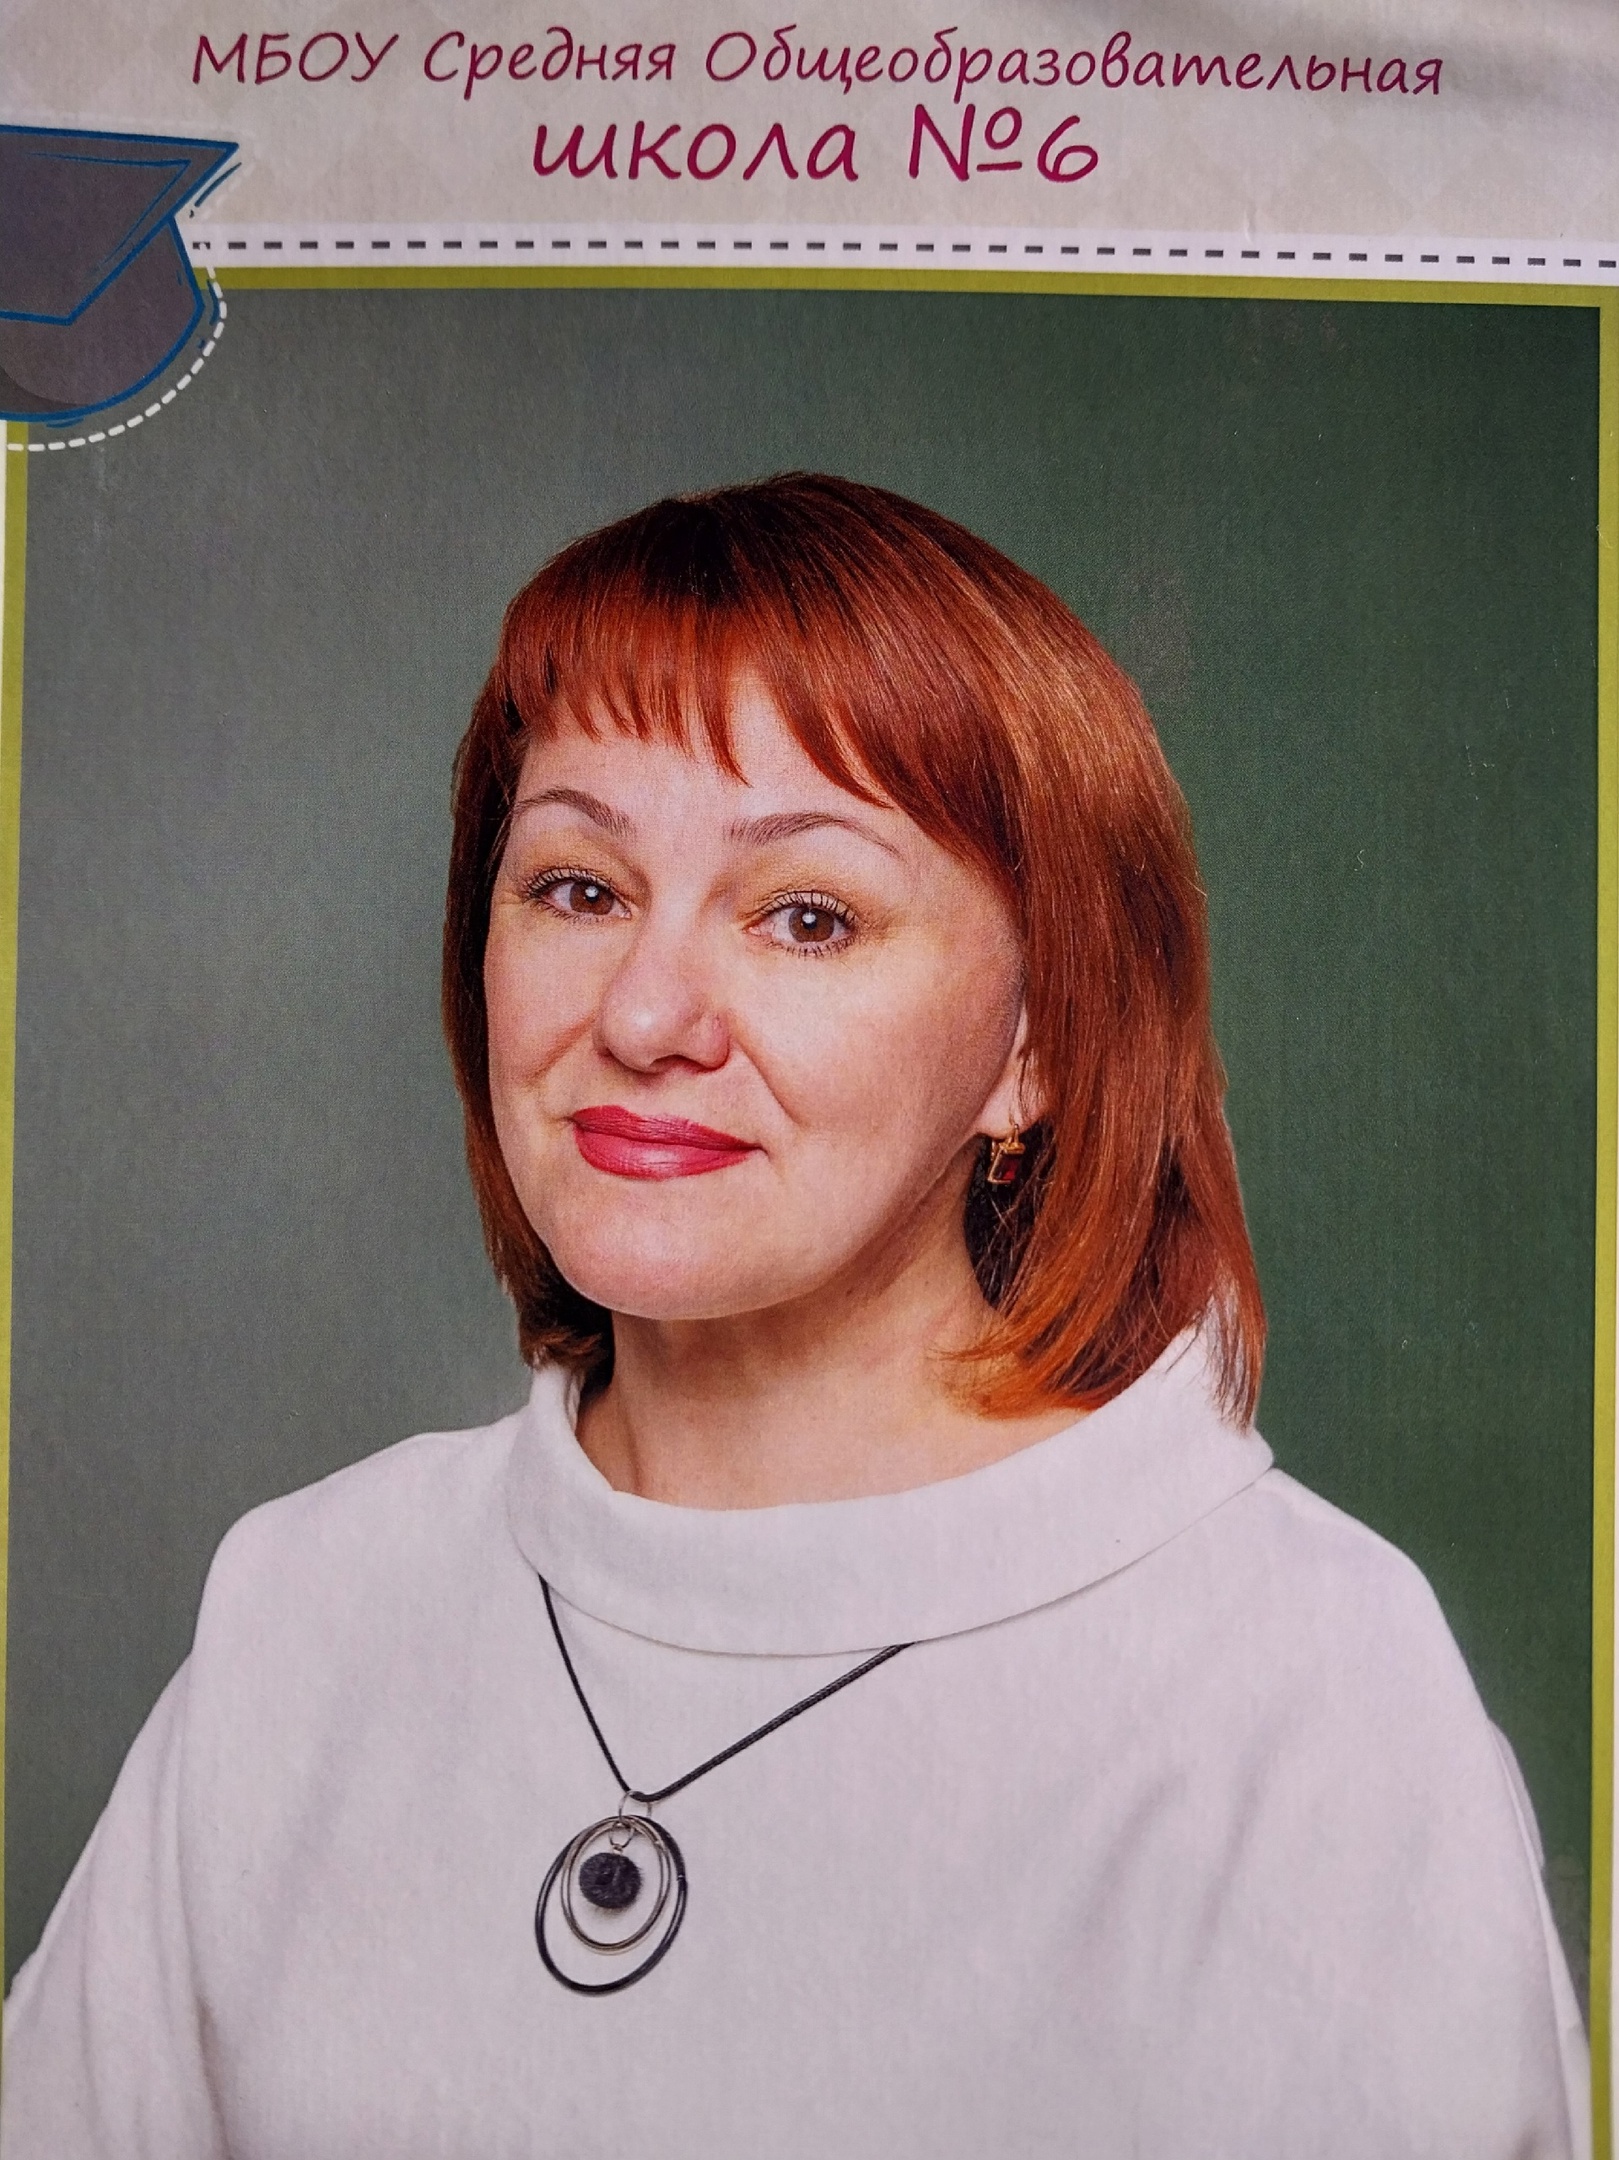 Юсупова Гюлсина Данисовна.